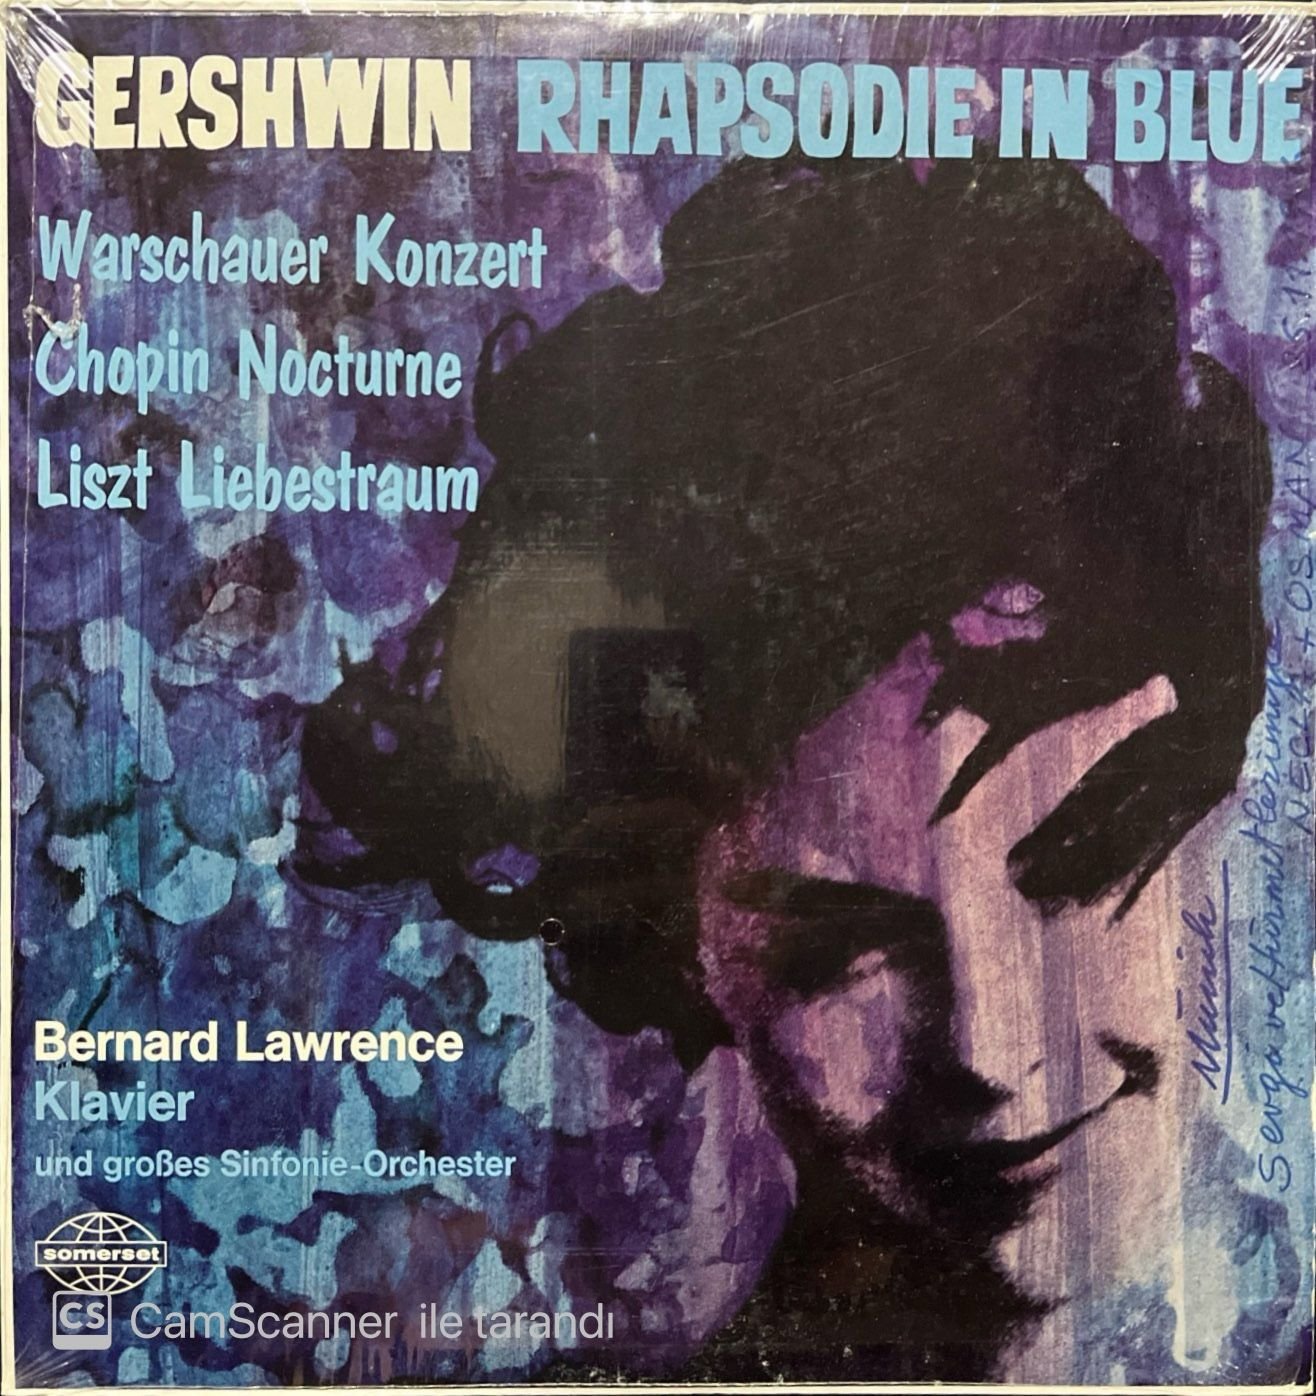 Gershwin Rhapsodie In Blue LP Plak